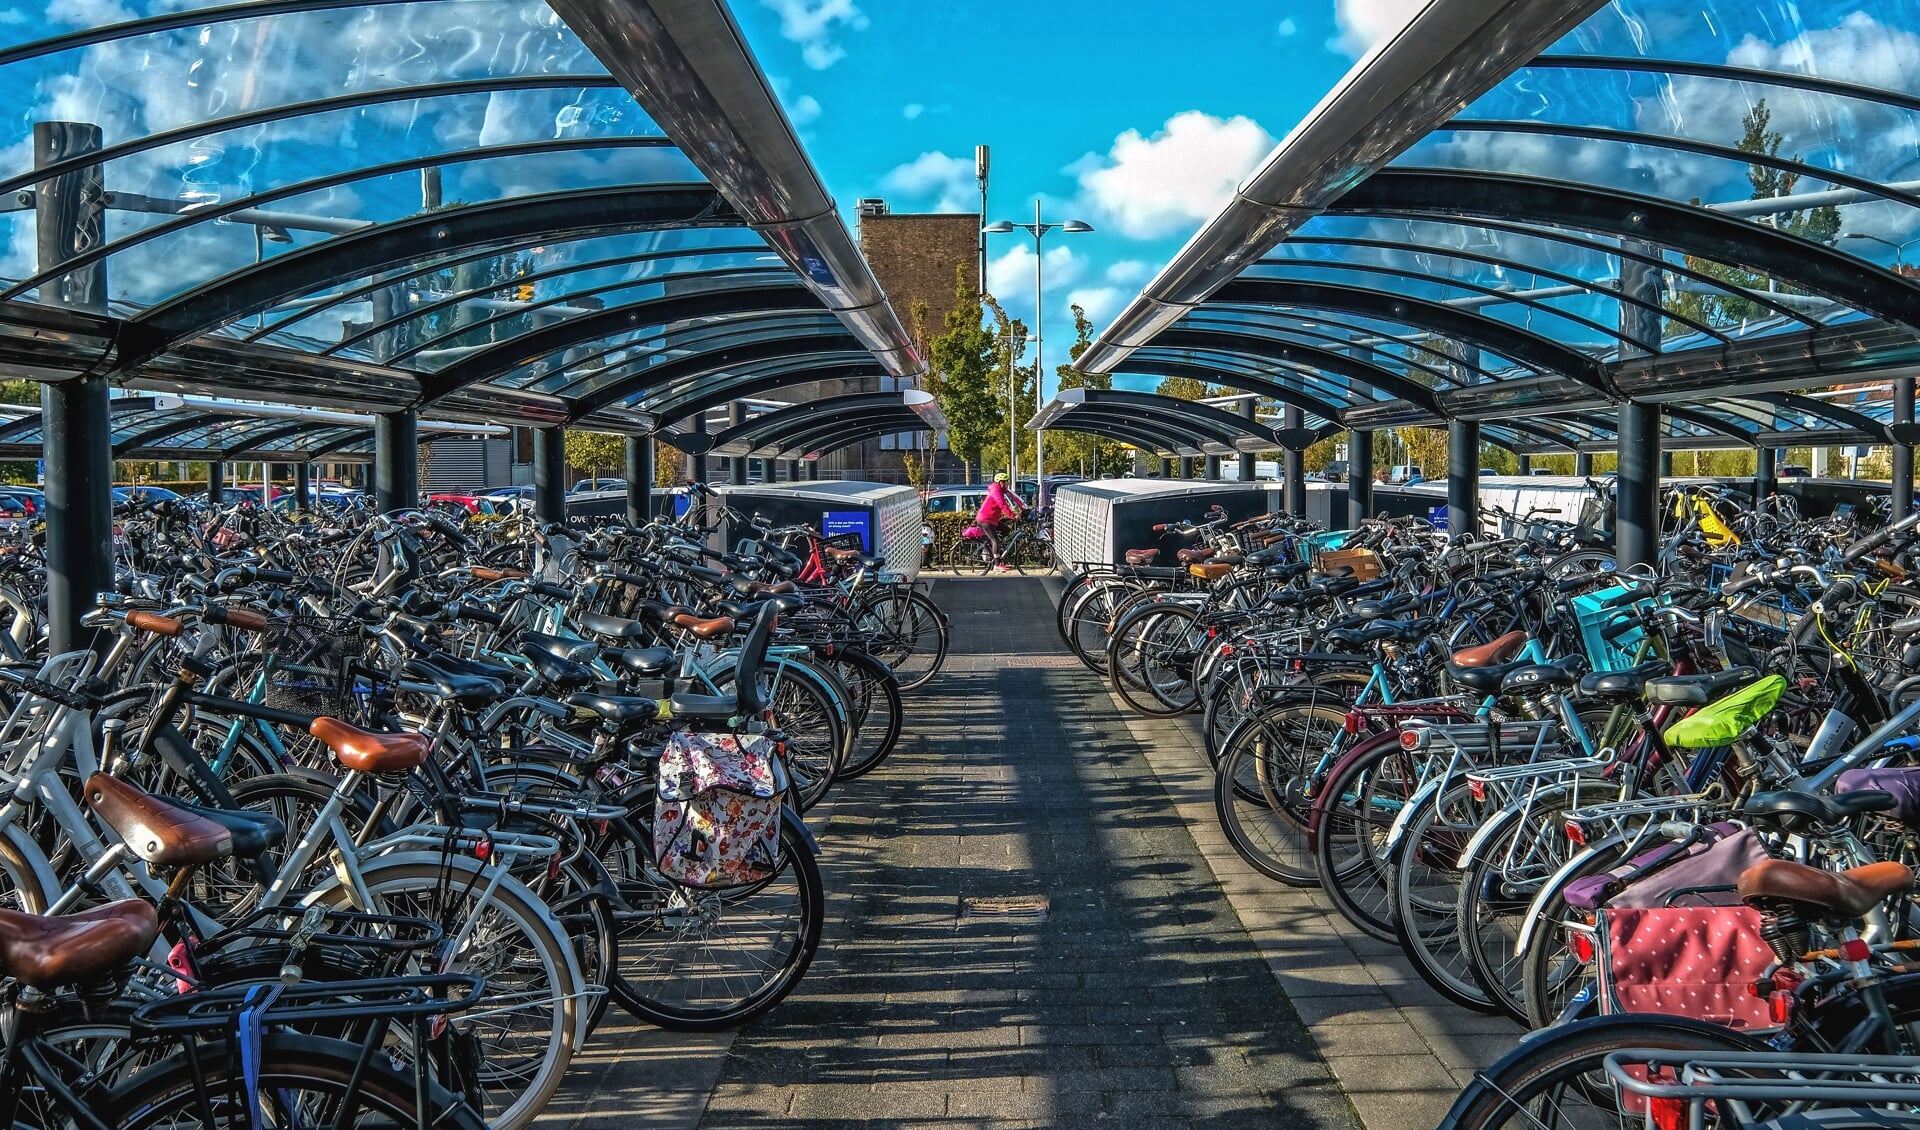 In hooguit een kwartier is het vanaf station Uitgeest/Heemskerk of Beverwijk naar het nabijgelegen bedrijventerrein fietsen. In de fietsenstalling staan de tweewielers gereed. 